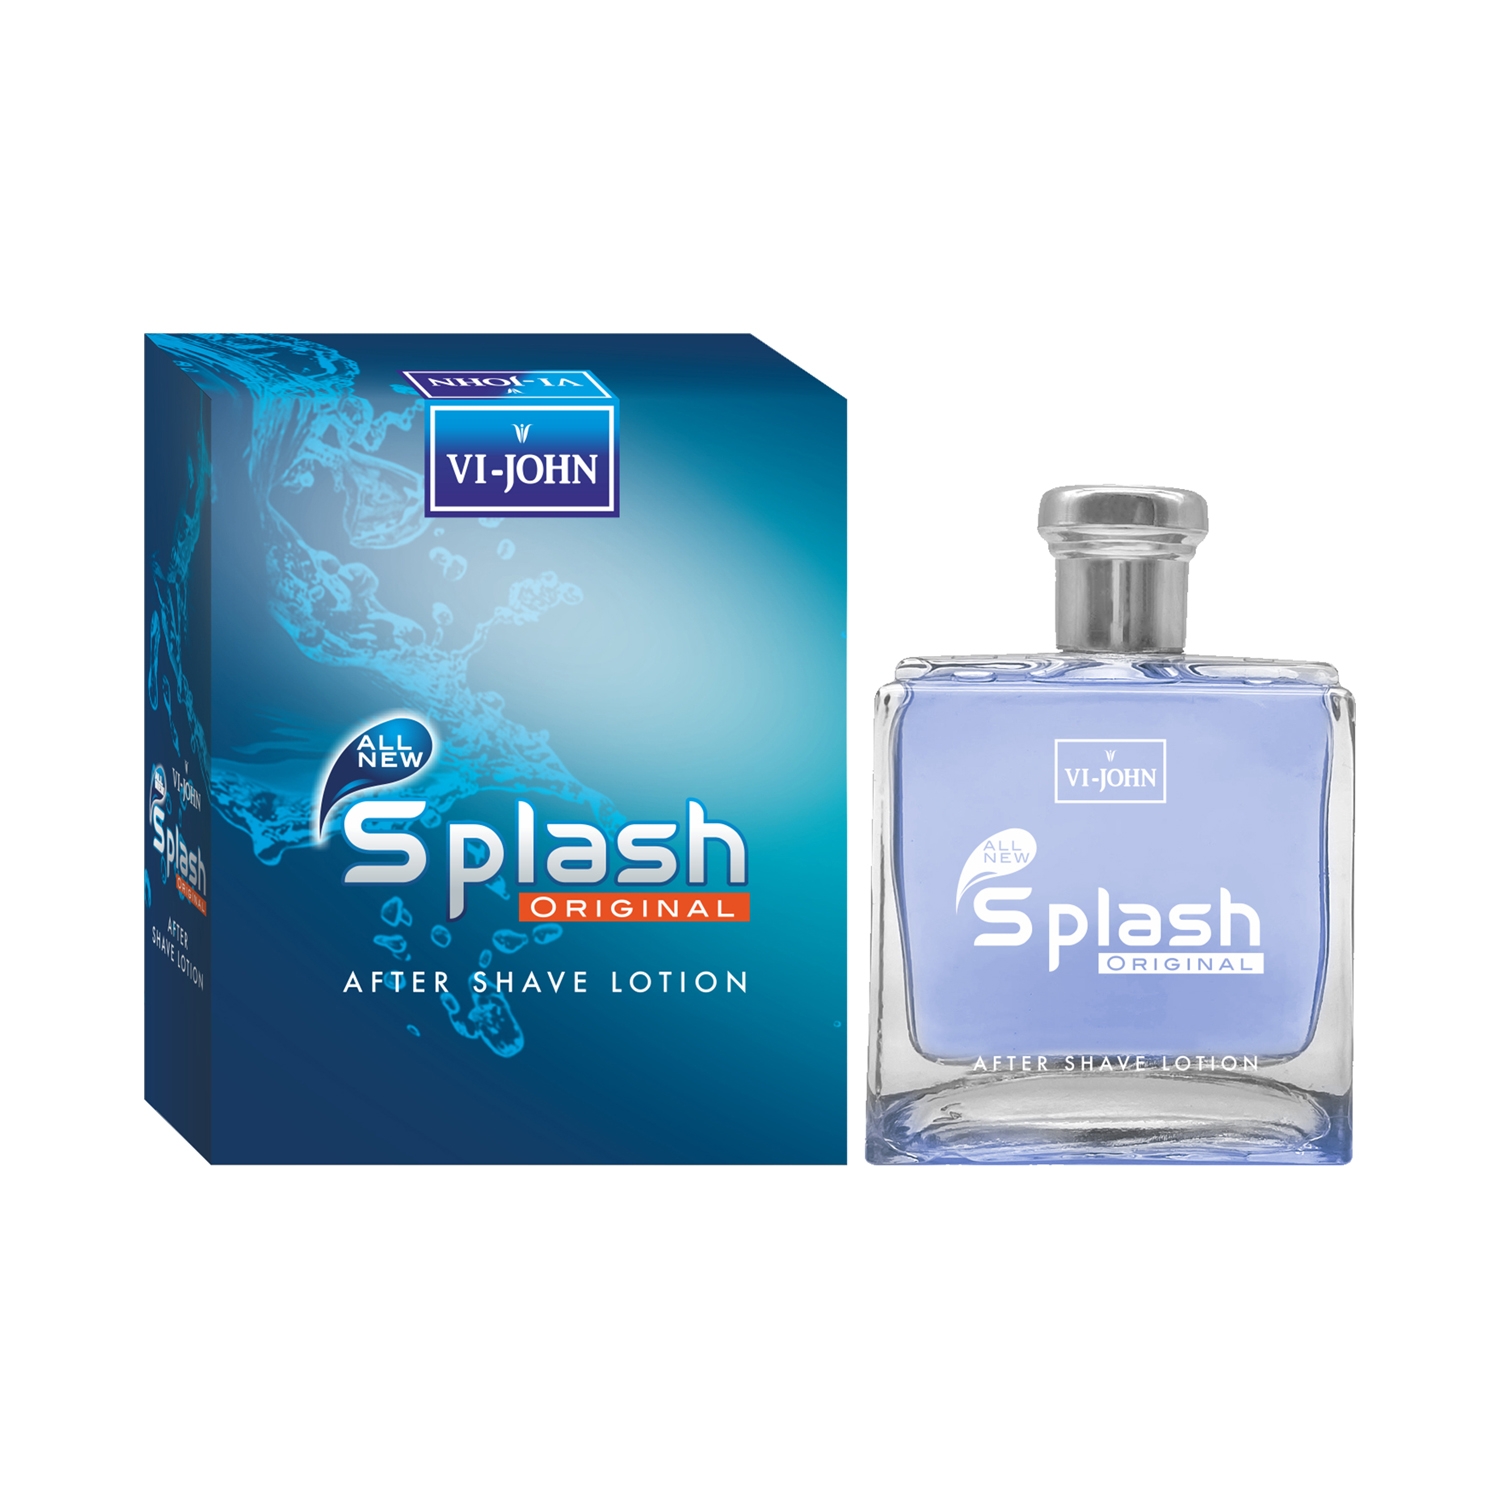 VI-JOHN | VI-JOHN Splash Original After Shave Lotion (100ml)